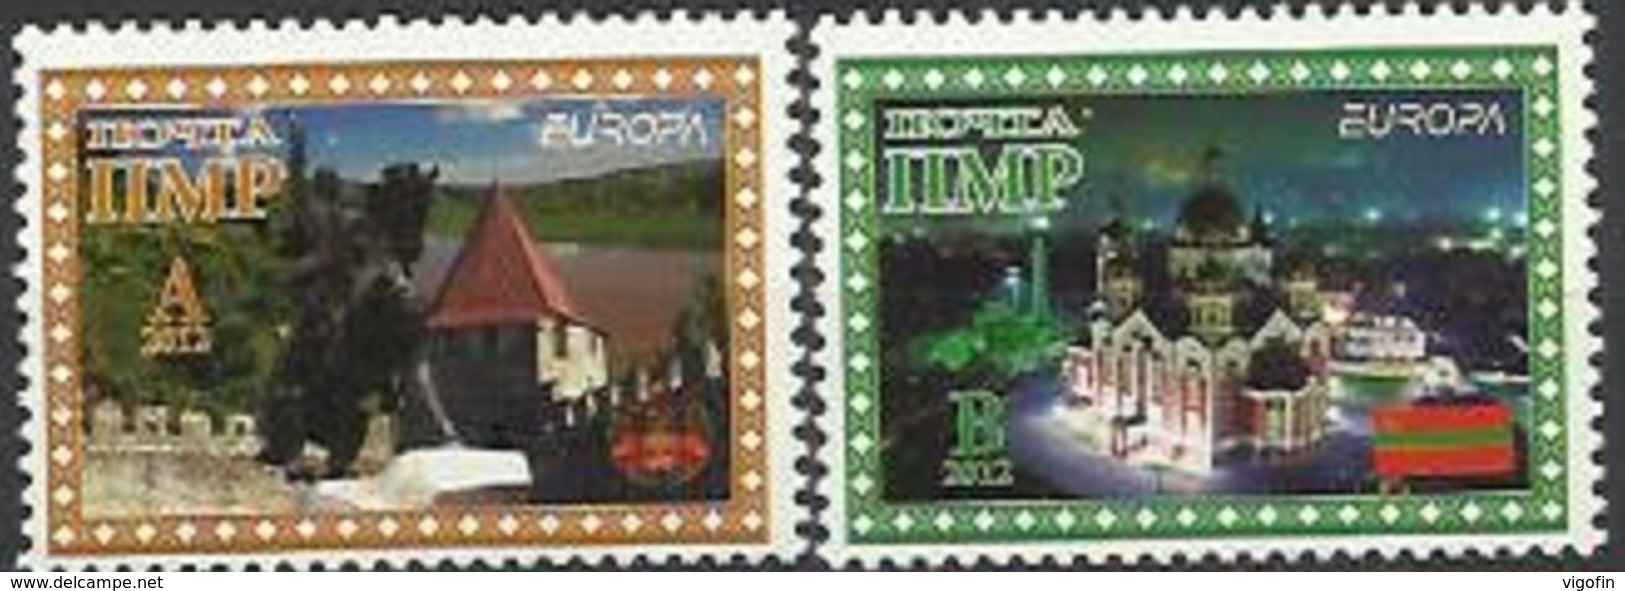 PMR 2012  EUROPA CEPT, MOLDAVIA PMR, 1 X 2v, MNH - 2012